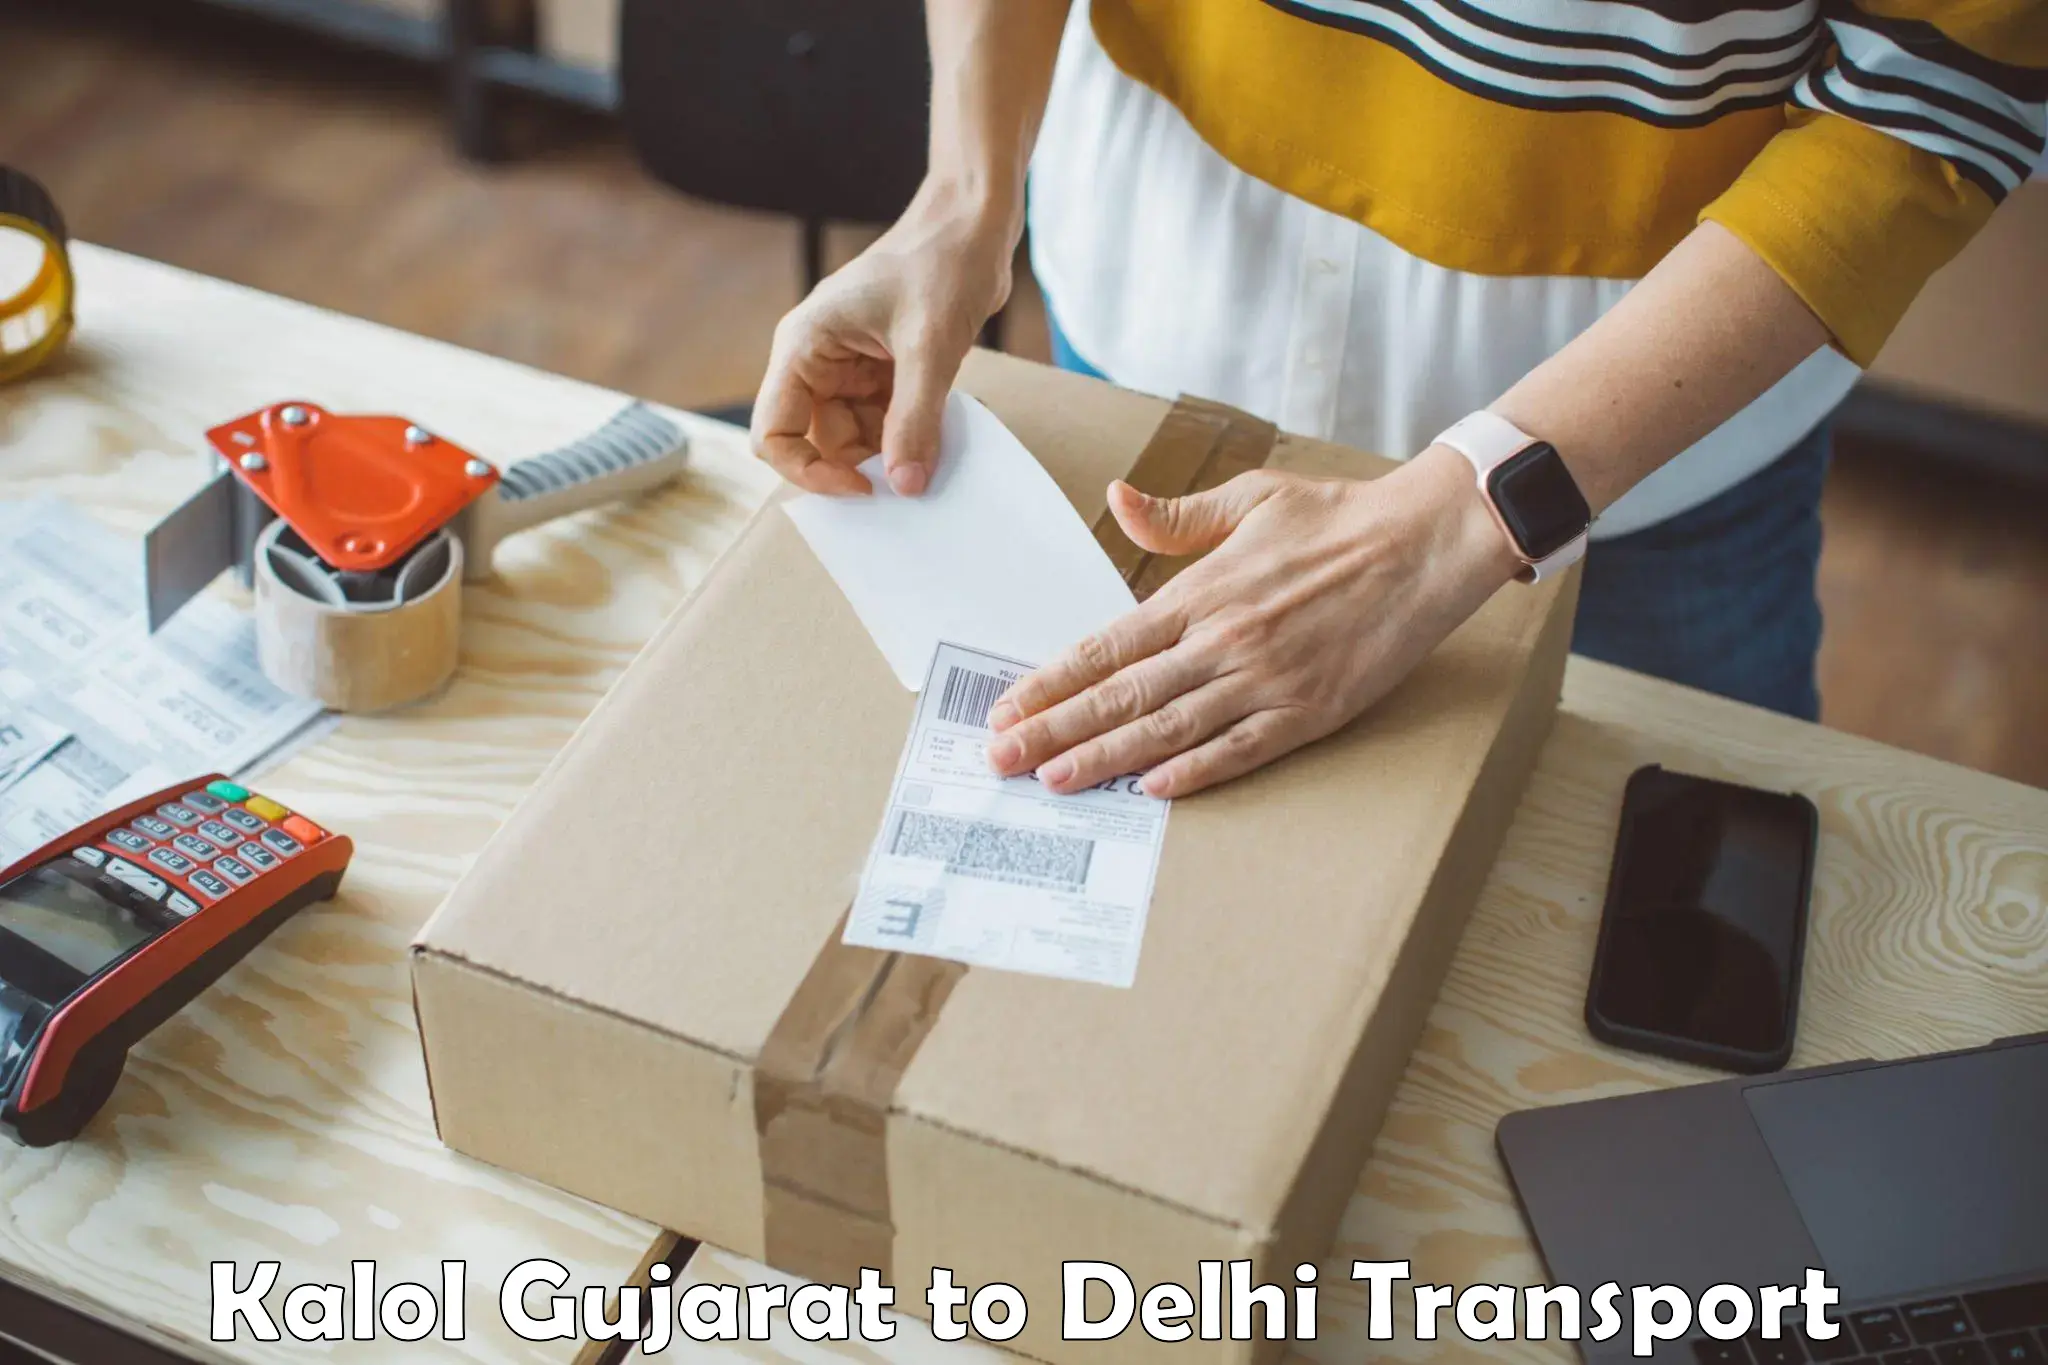 Furniture transport service Kalol Gujarat to Burari